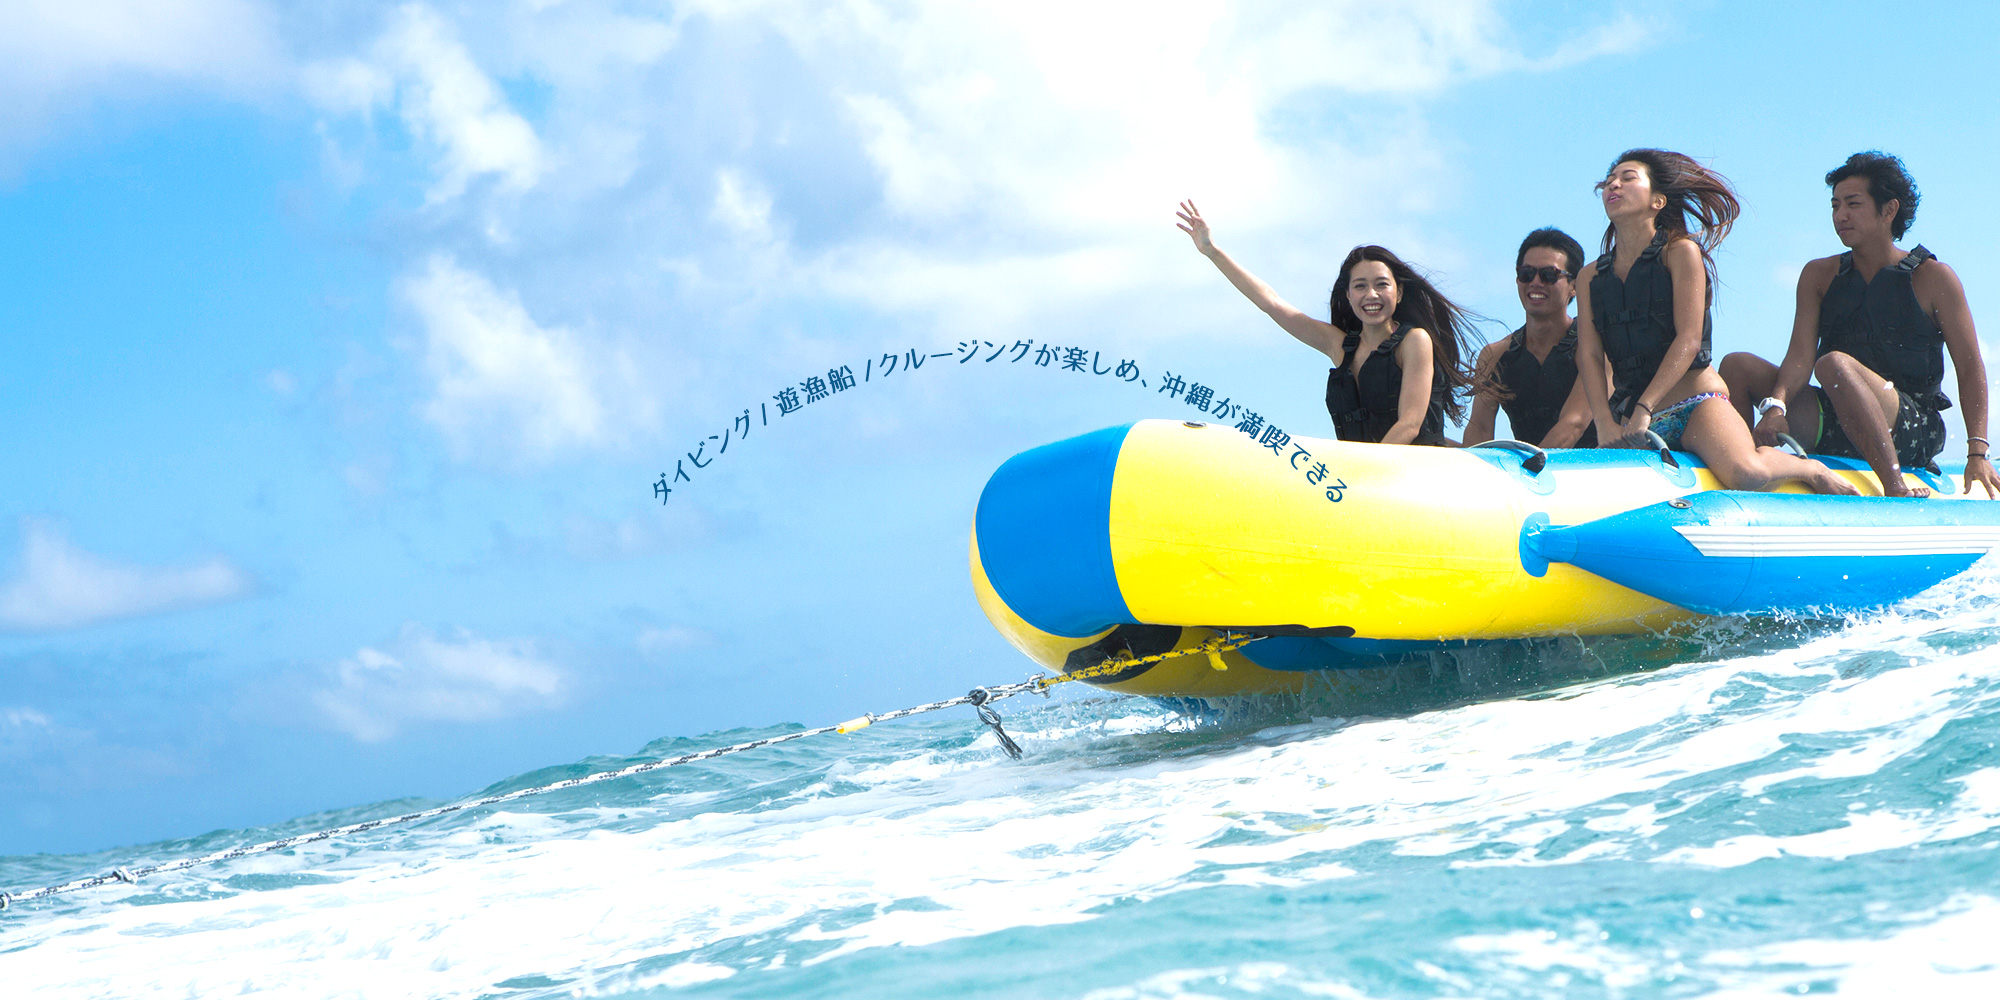 ダイビング・遊漁船・クルージングが楽しめ、沖縄が満喫できる